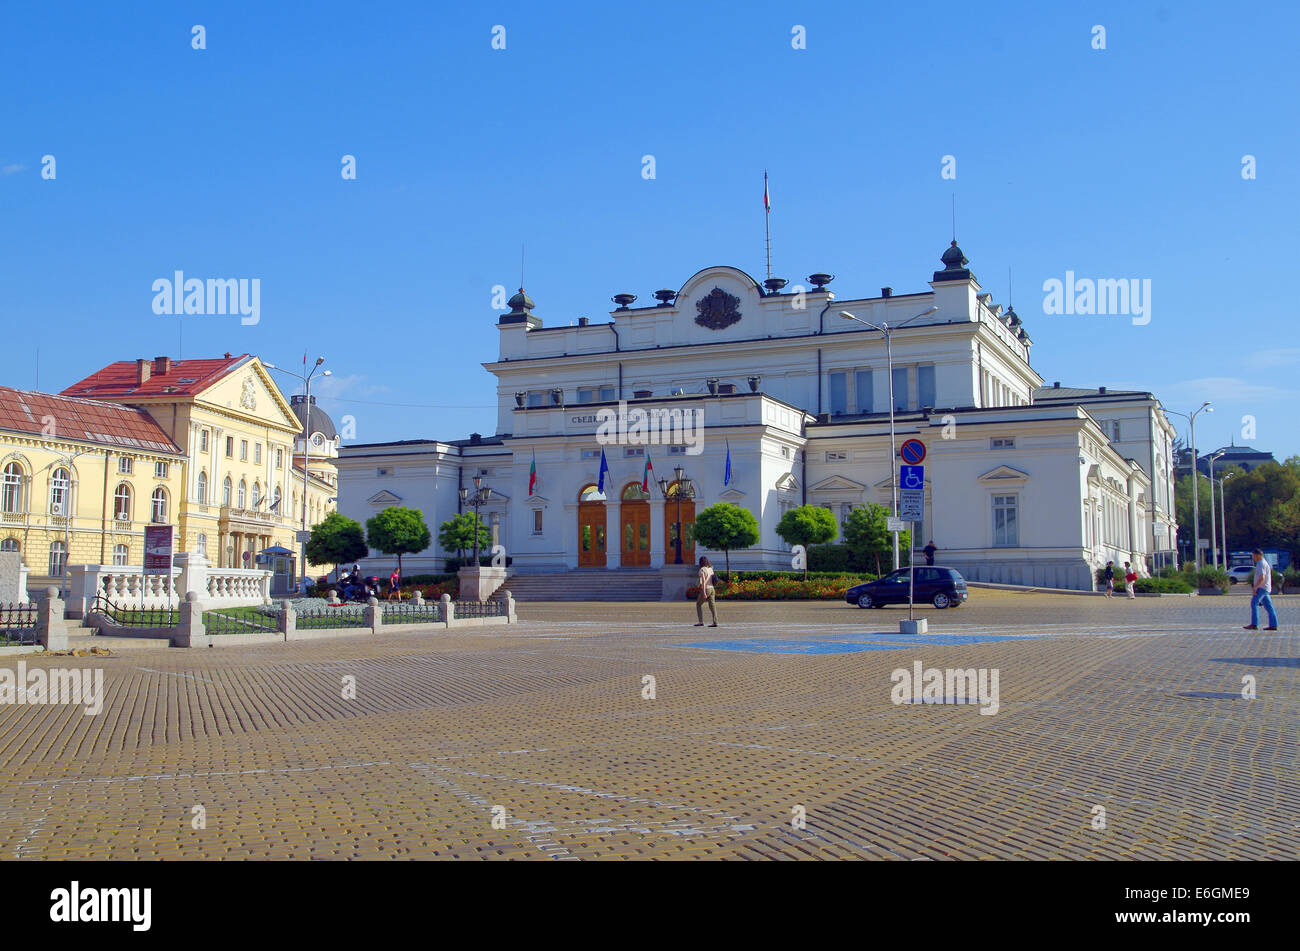 Assemblea nazionale della Repubblica di Bulgaria è un organismo statale che esercitano il potere legislativo nella Repubblica di Bulgaria. Nazionali Foto Stock